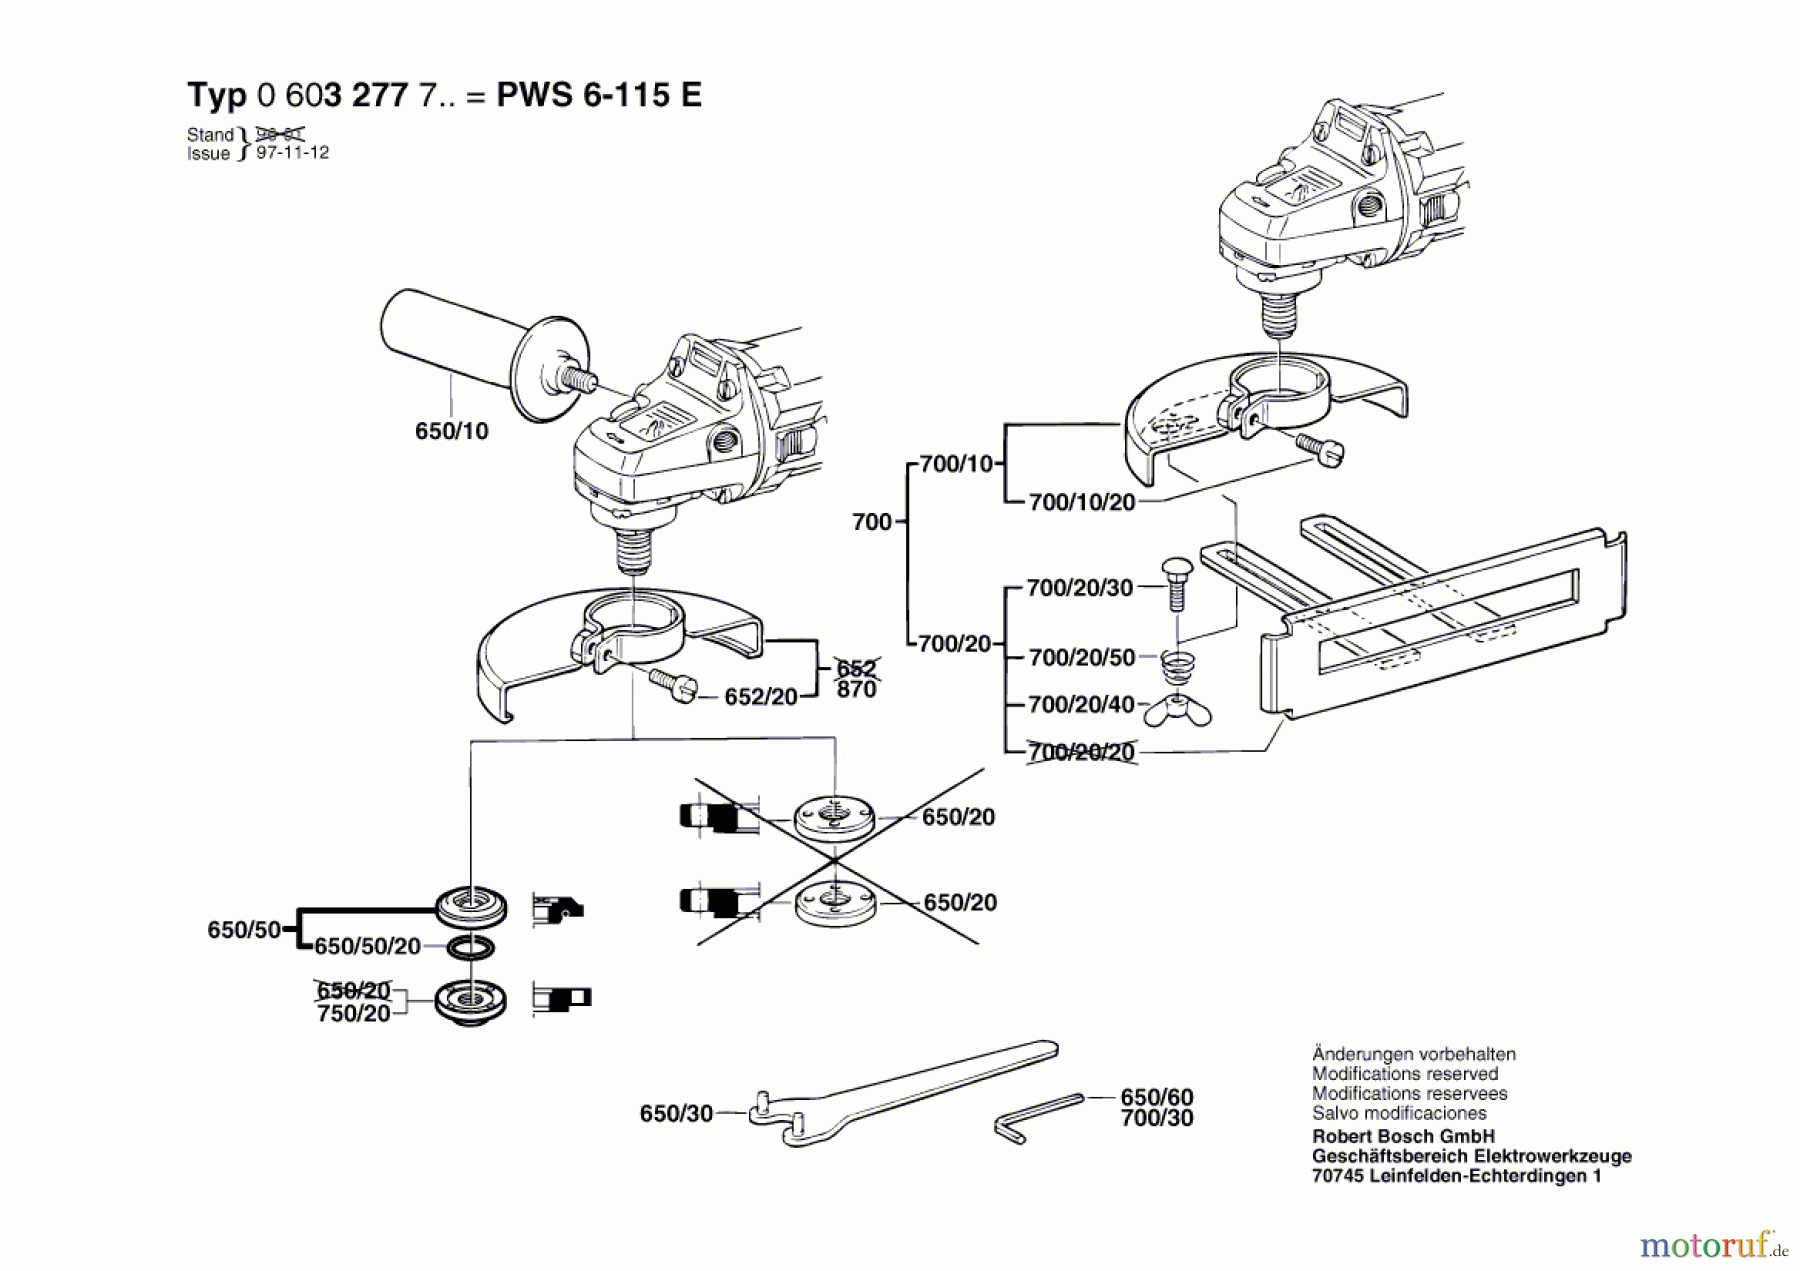  Bosch Werkzeug Winkelschleifer PWS 6-115 E Seite 2